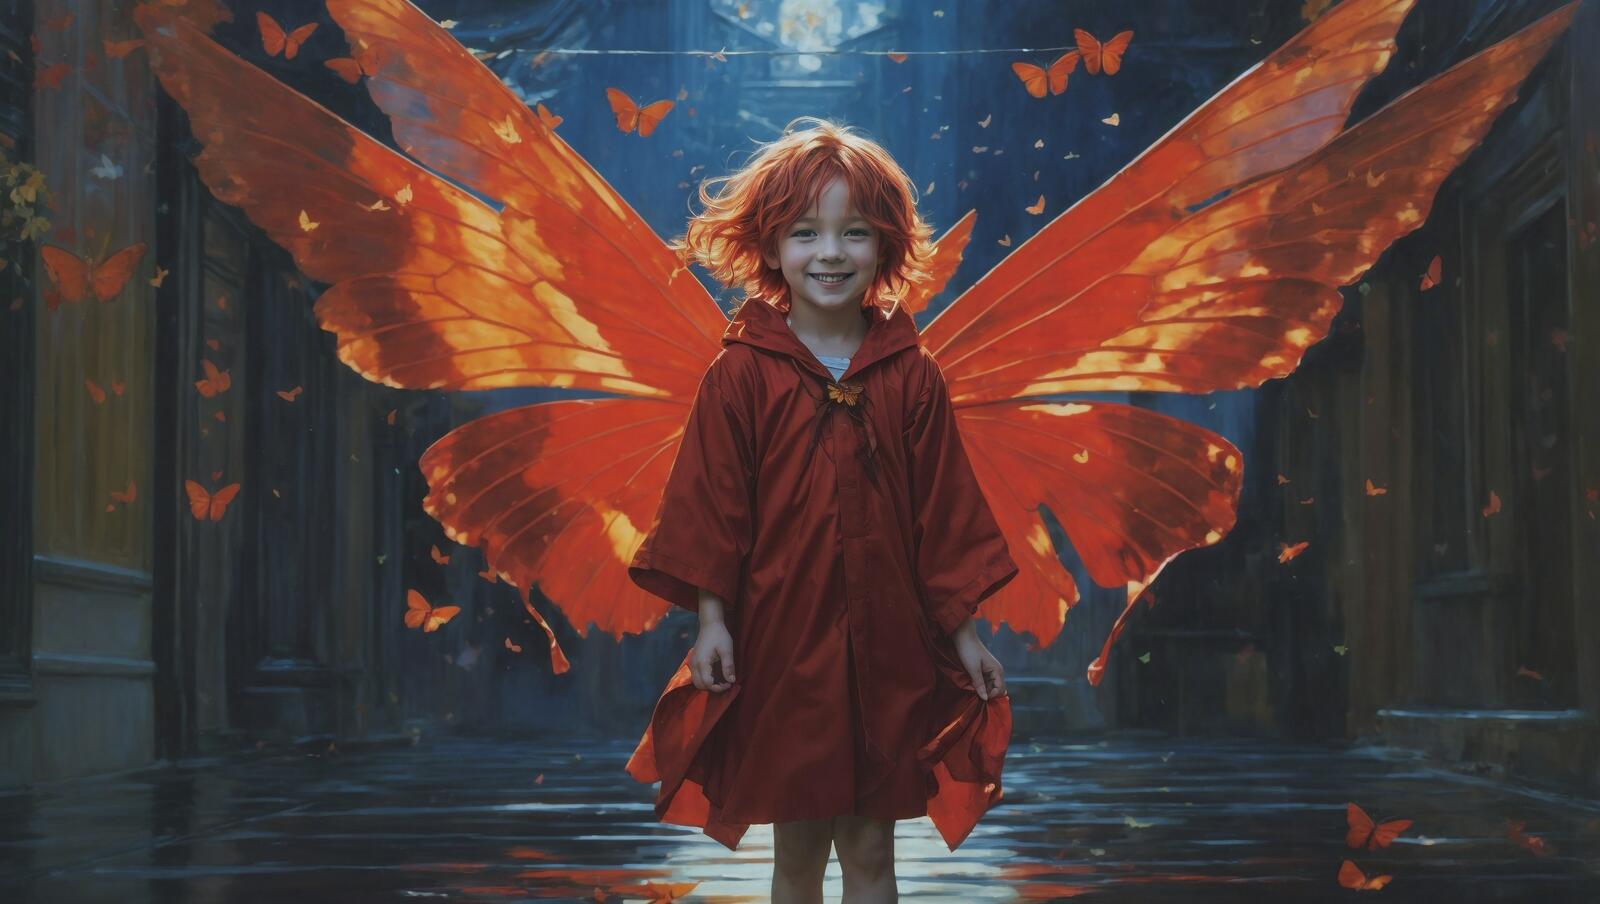 Бесплатное фото Девушка, одетая как фея, стоит перед зданием с крыльями бабочки